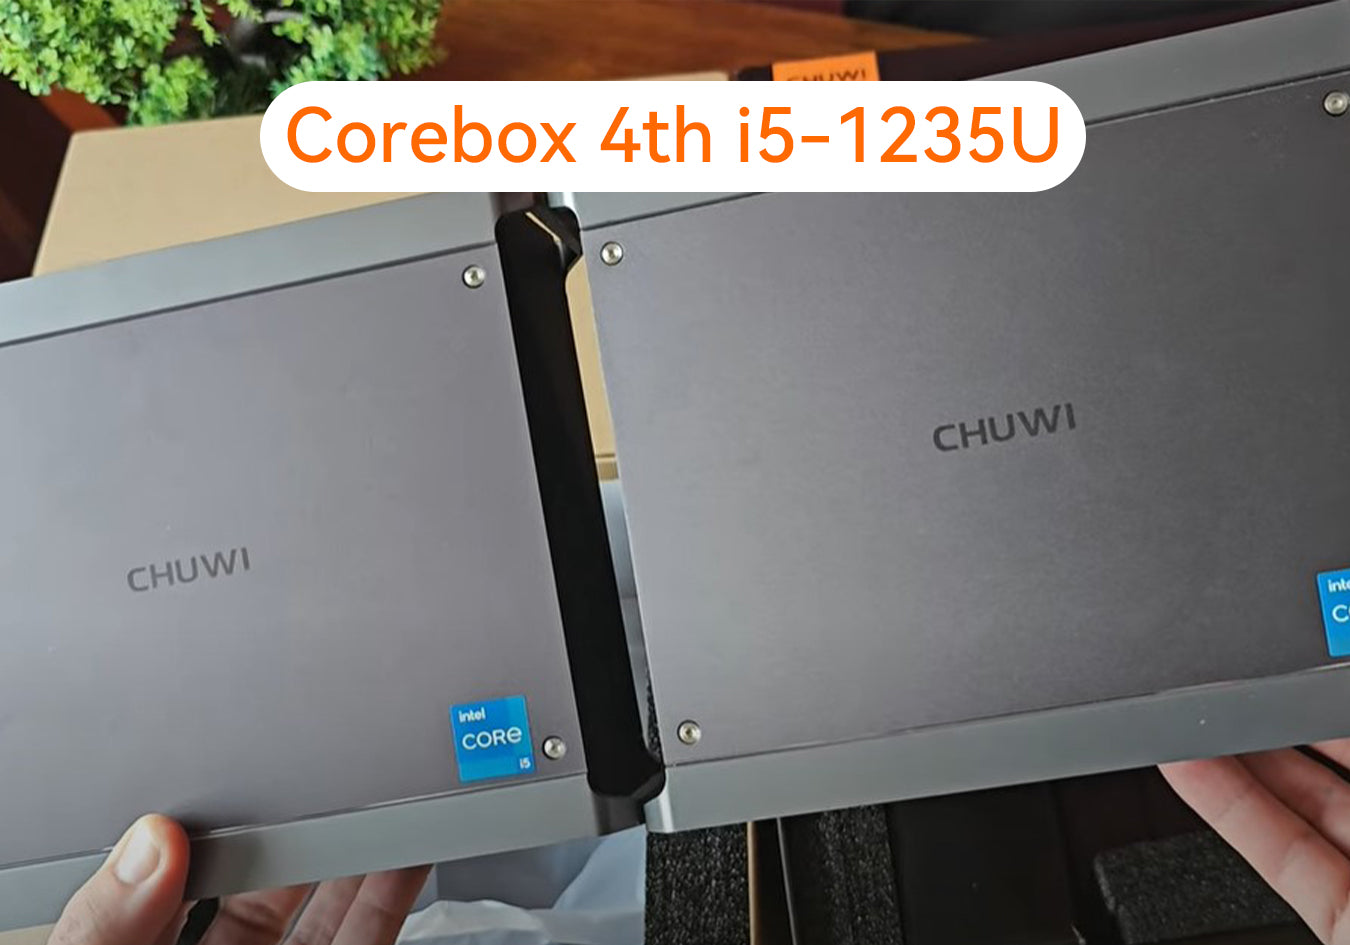 Corebox 4th i5-1235U: CanalRev compara Corebox 4th 1235 y Corebox 4th 1215